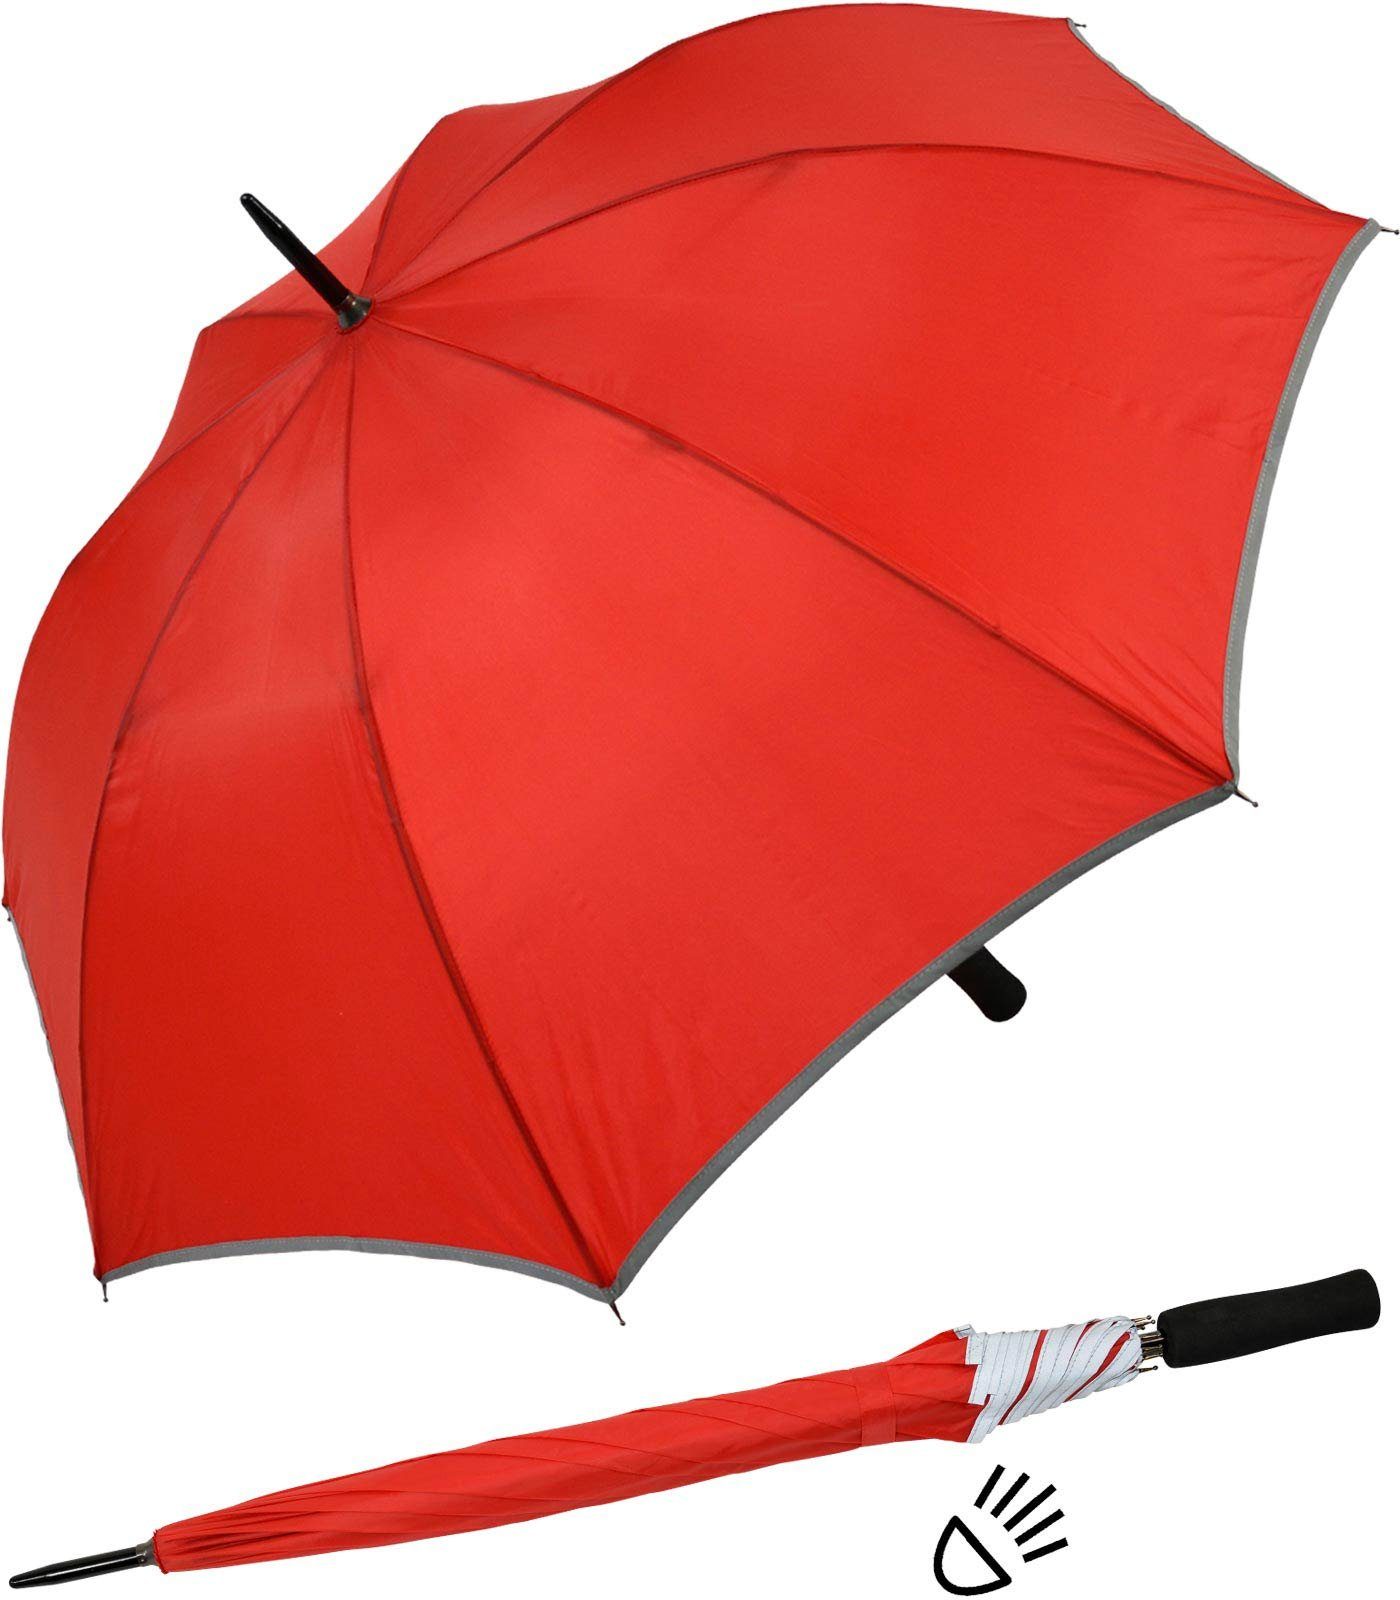 Impliva Stockregenschirm Falcone® Reflex Fiberglas reflektierende Borte, leichter reflex Sicherheitsschirm rot